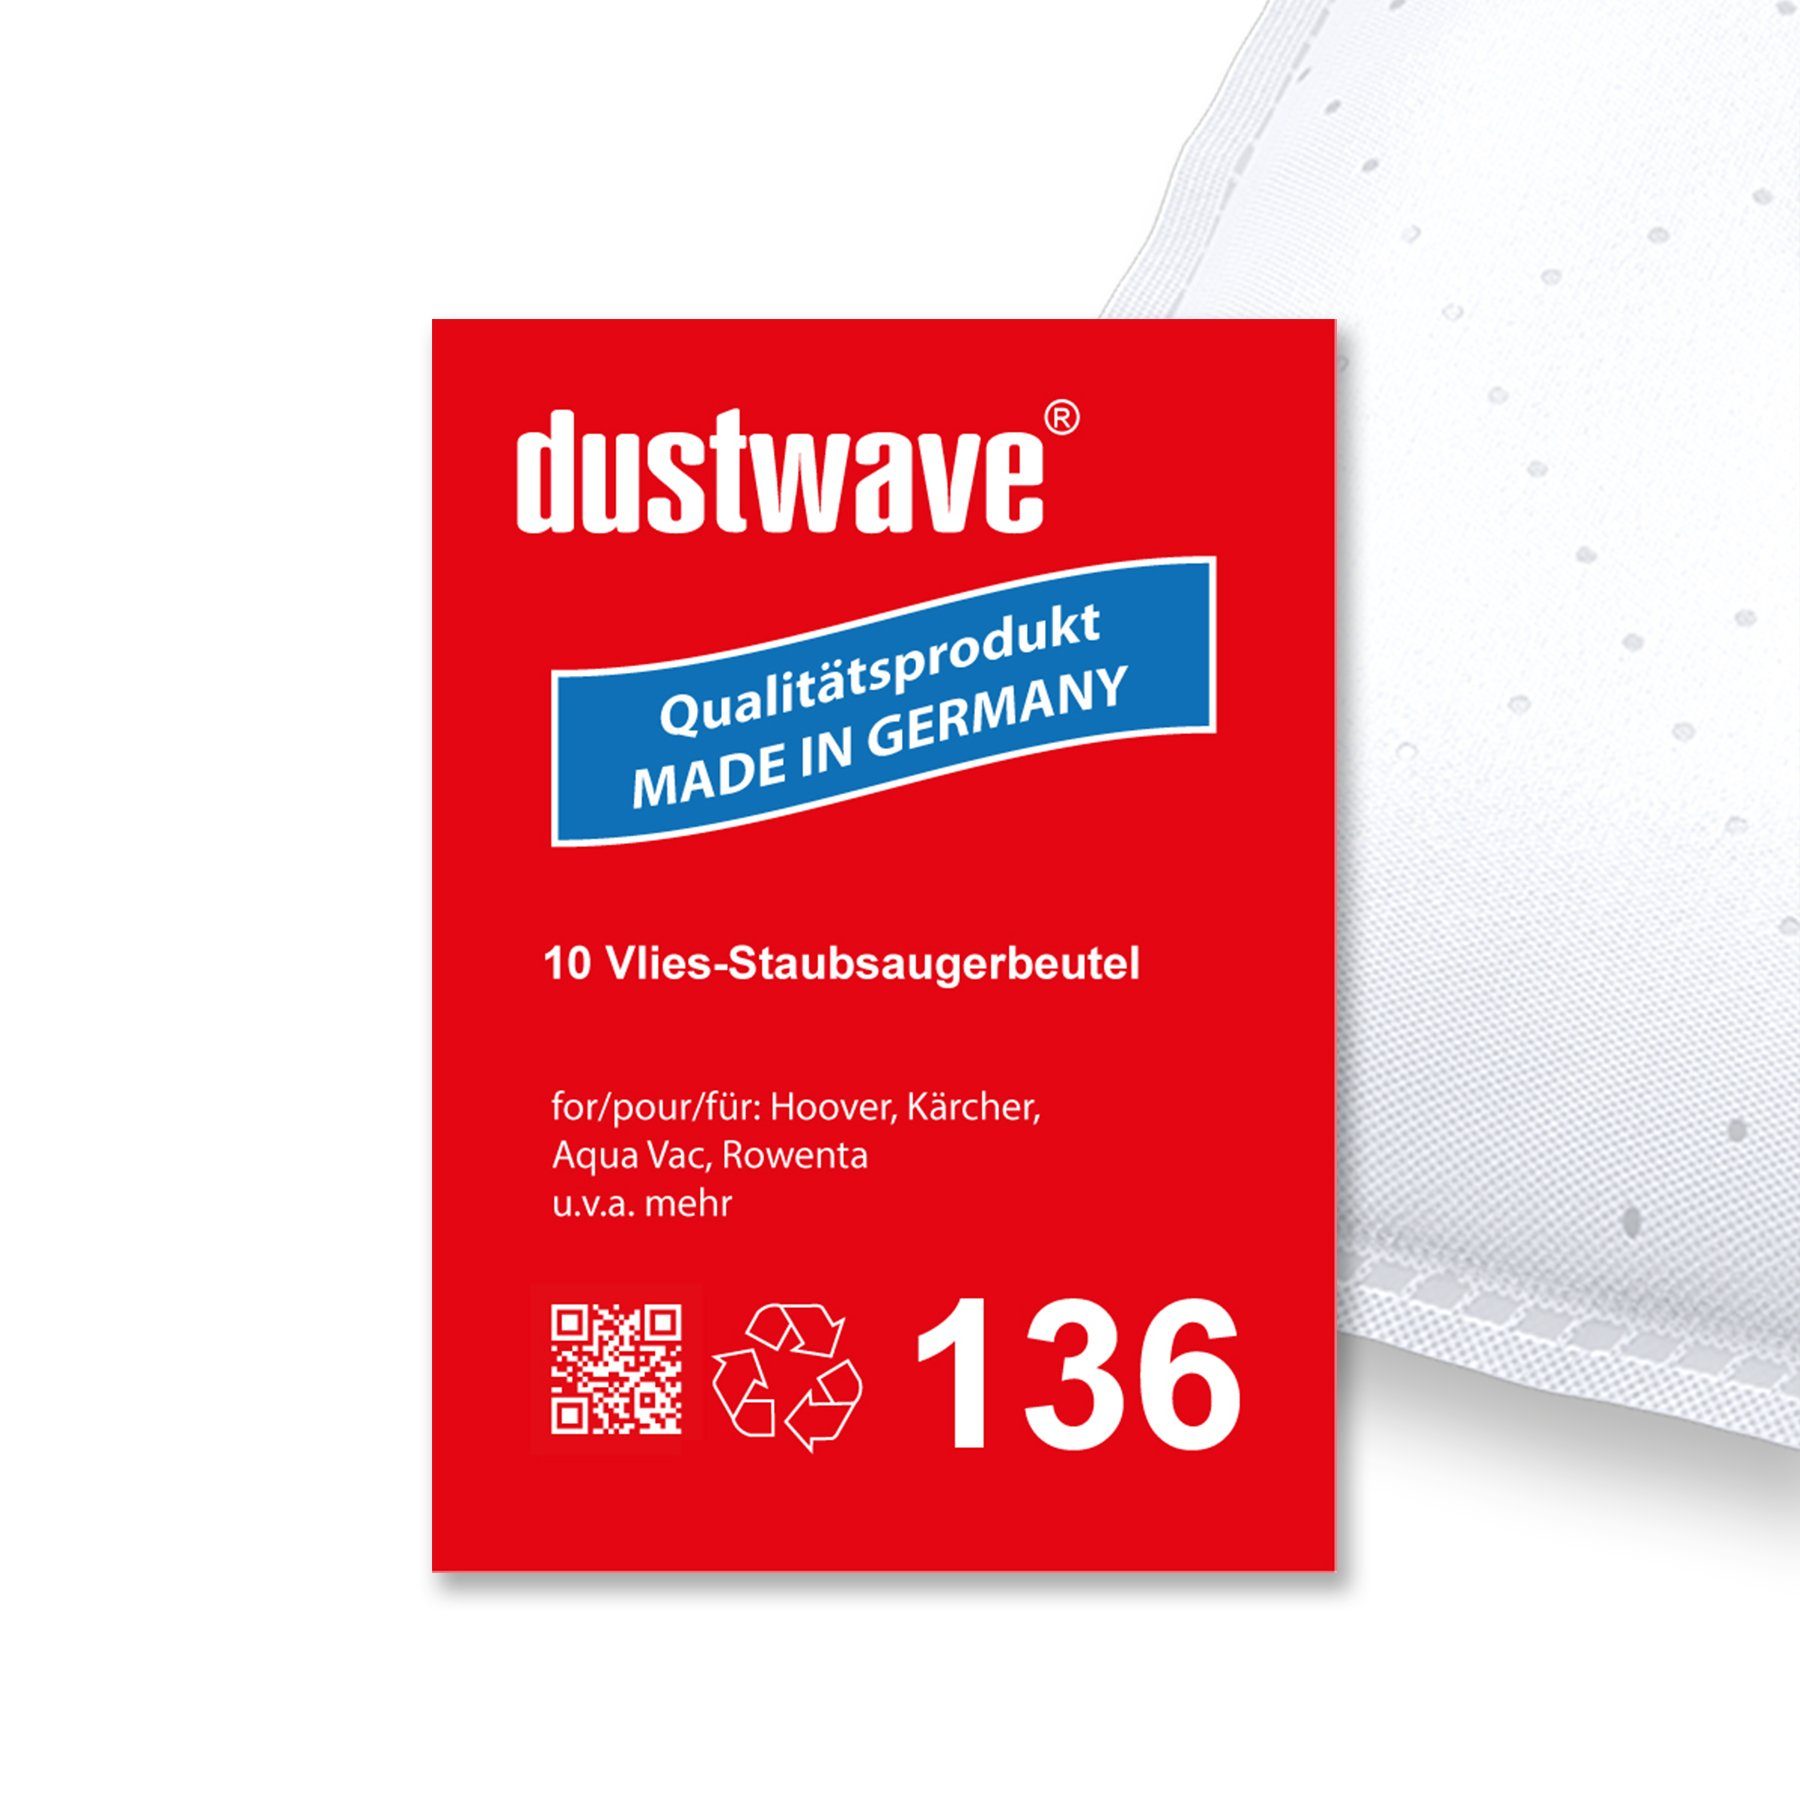 Dustwave Staubsaugerbeutel Sparpack, passend für AquaVac NTS 20 Professional, 10 St., Sparpack, 10 Staubsaugerbeutel + 1 Hepa-Filter (ca. 15x15cm - zuschneidbar) AquaVac NTS 20 Professional - Standard